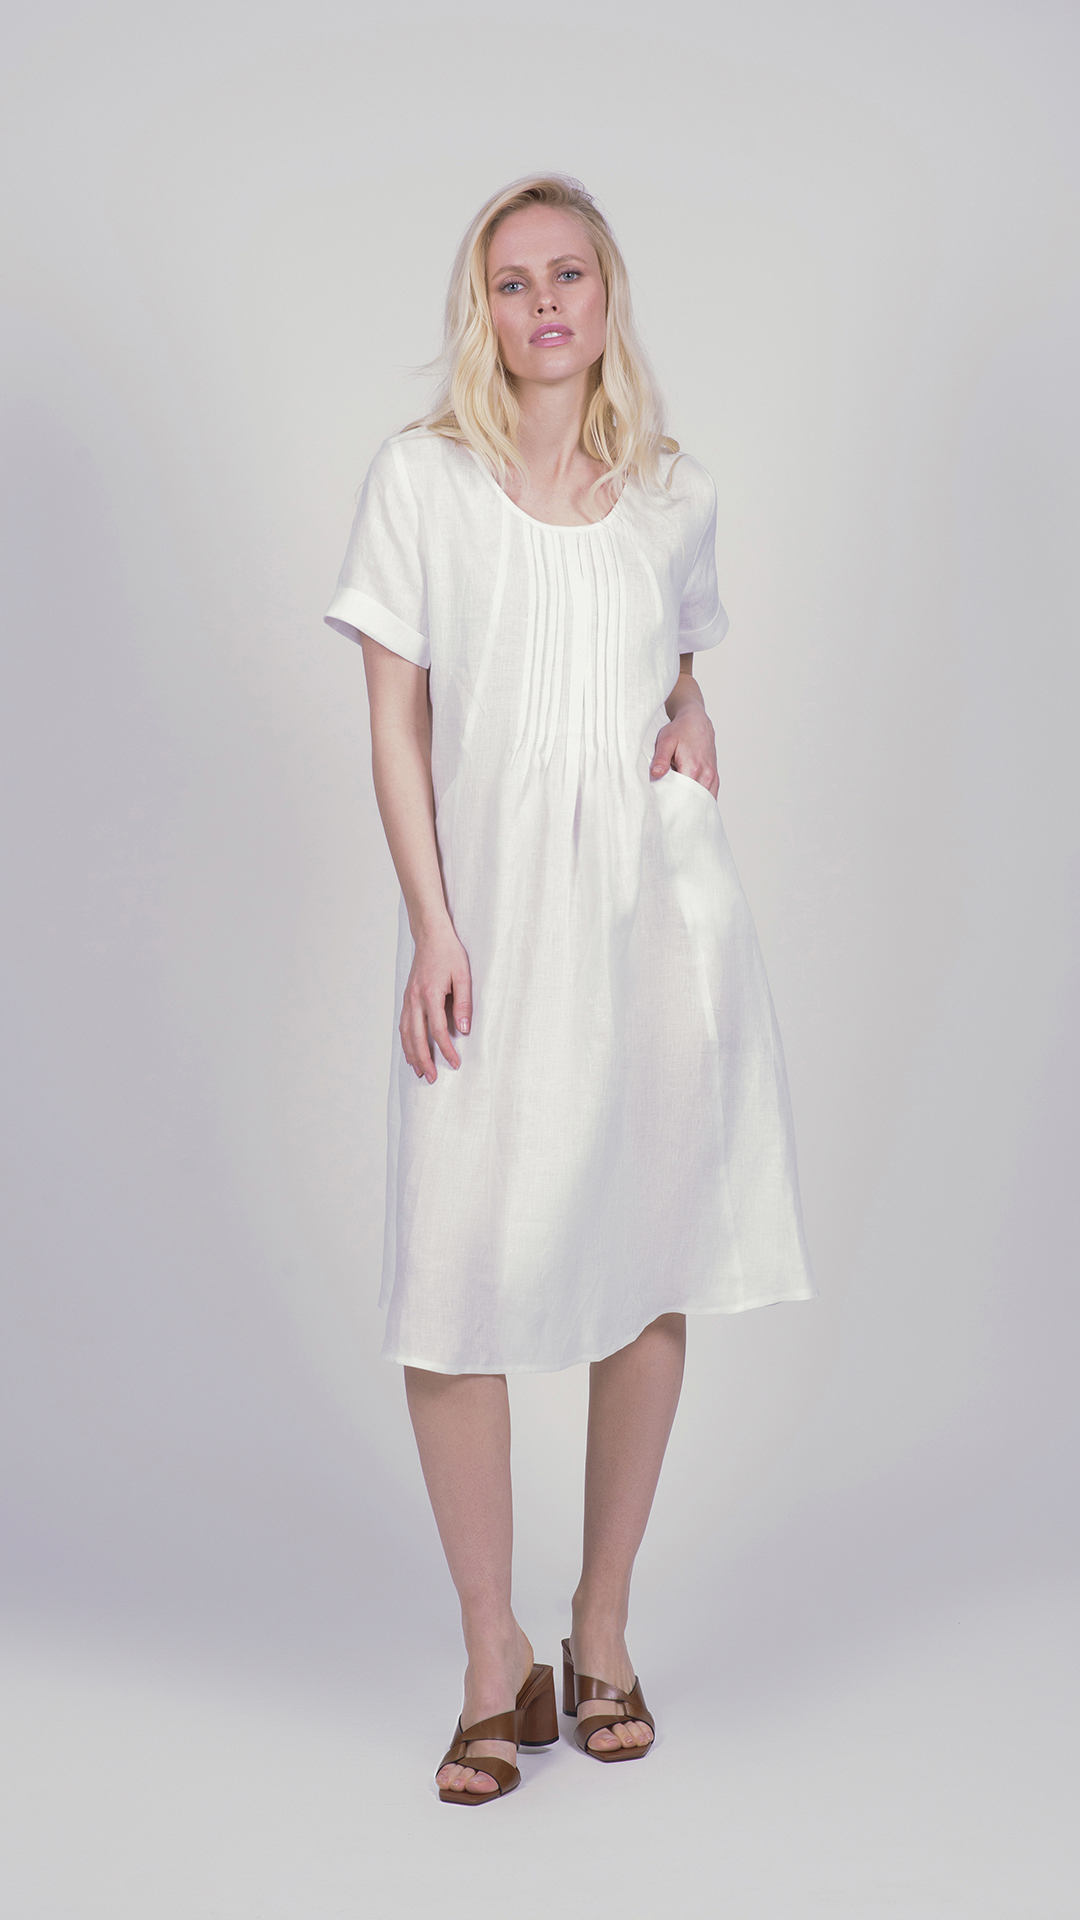 Linodress07 bianco 1 1stAmerican vestito da donna manica corta con lavorazione frontale 100% lino Made in Italy - abito con tasche laterali - puro lino